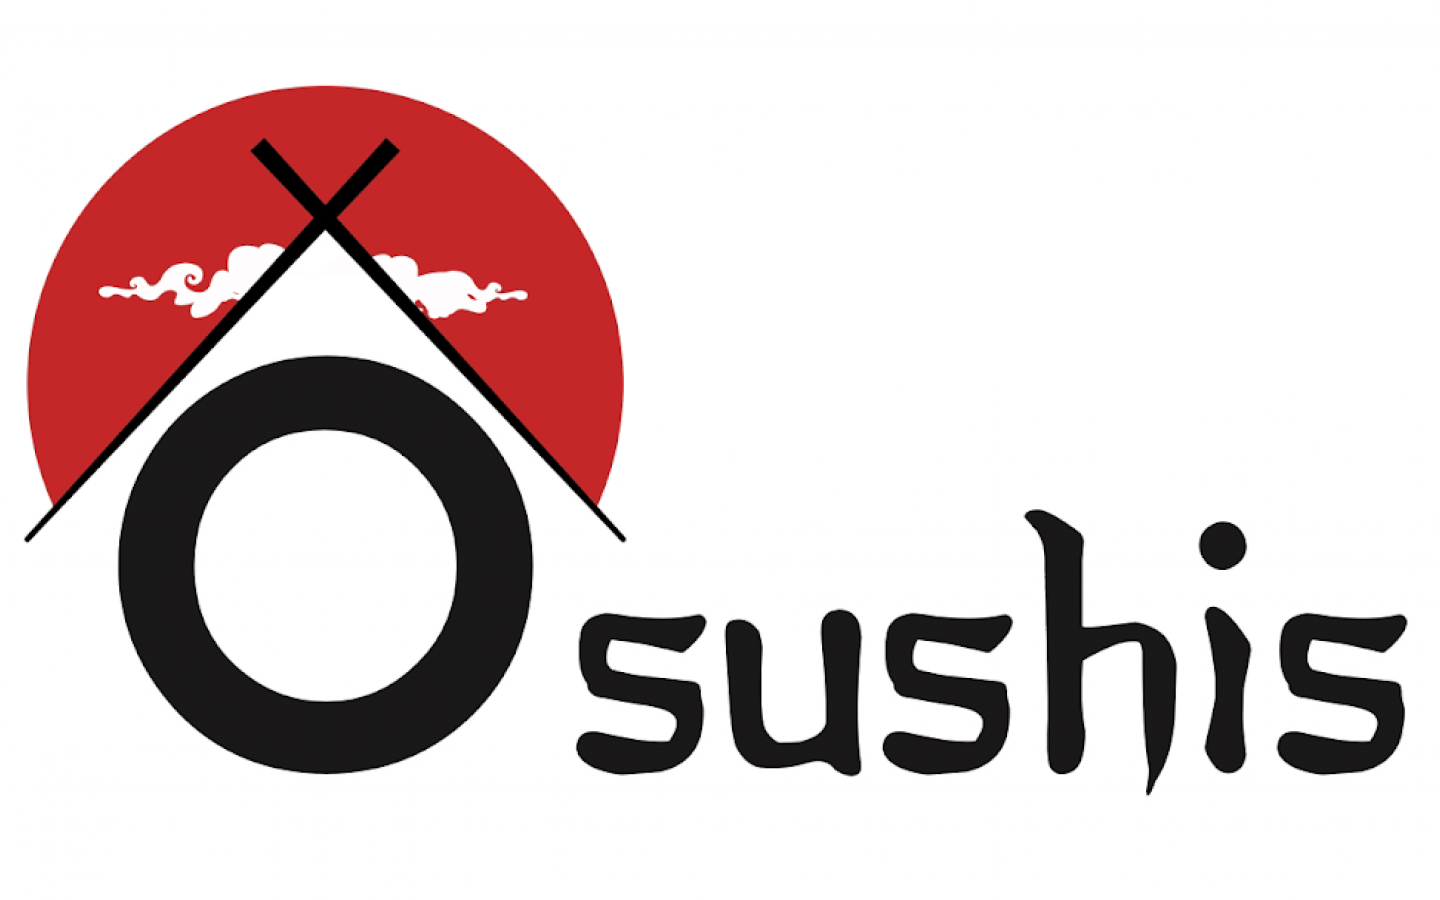 Restaurant - O'sushis